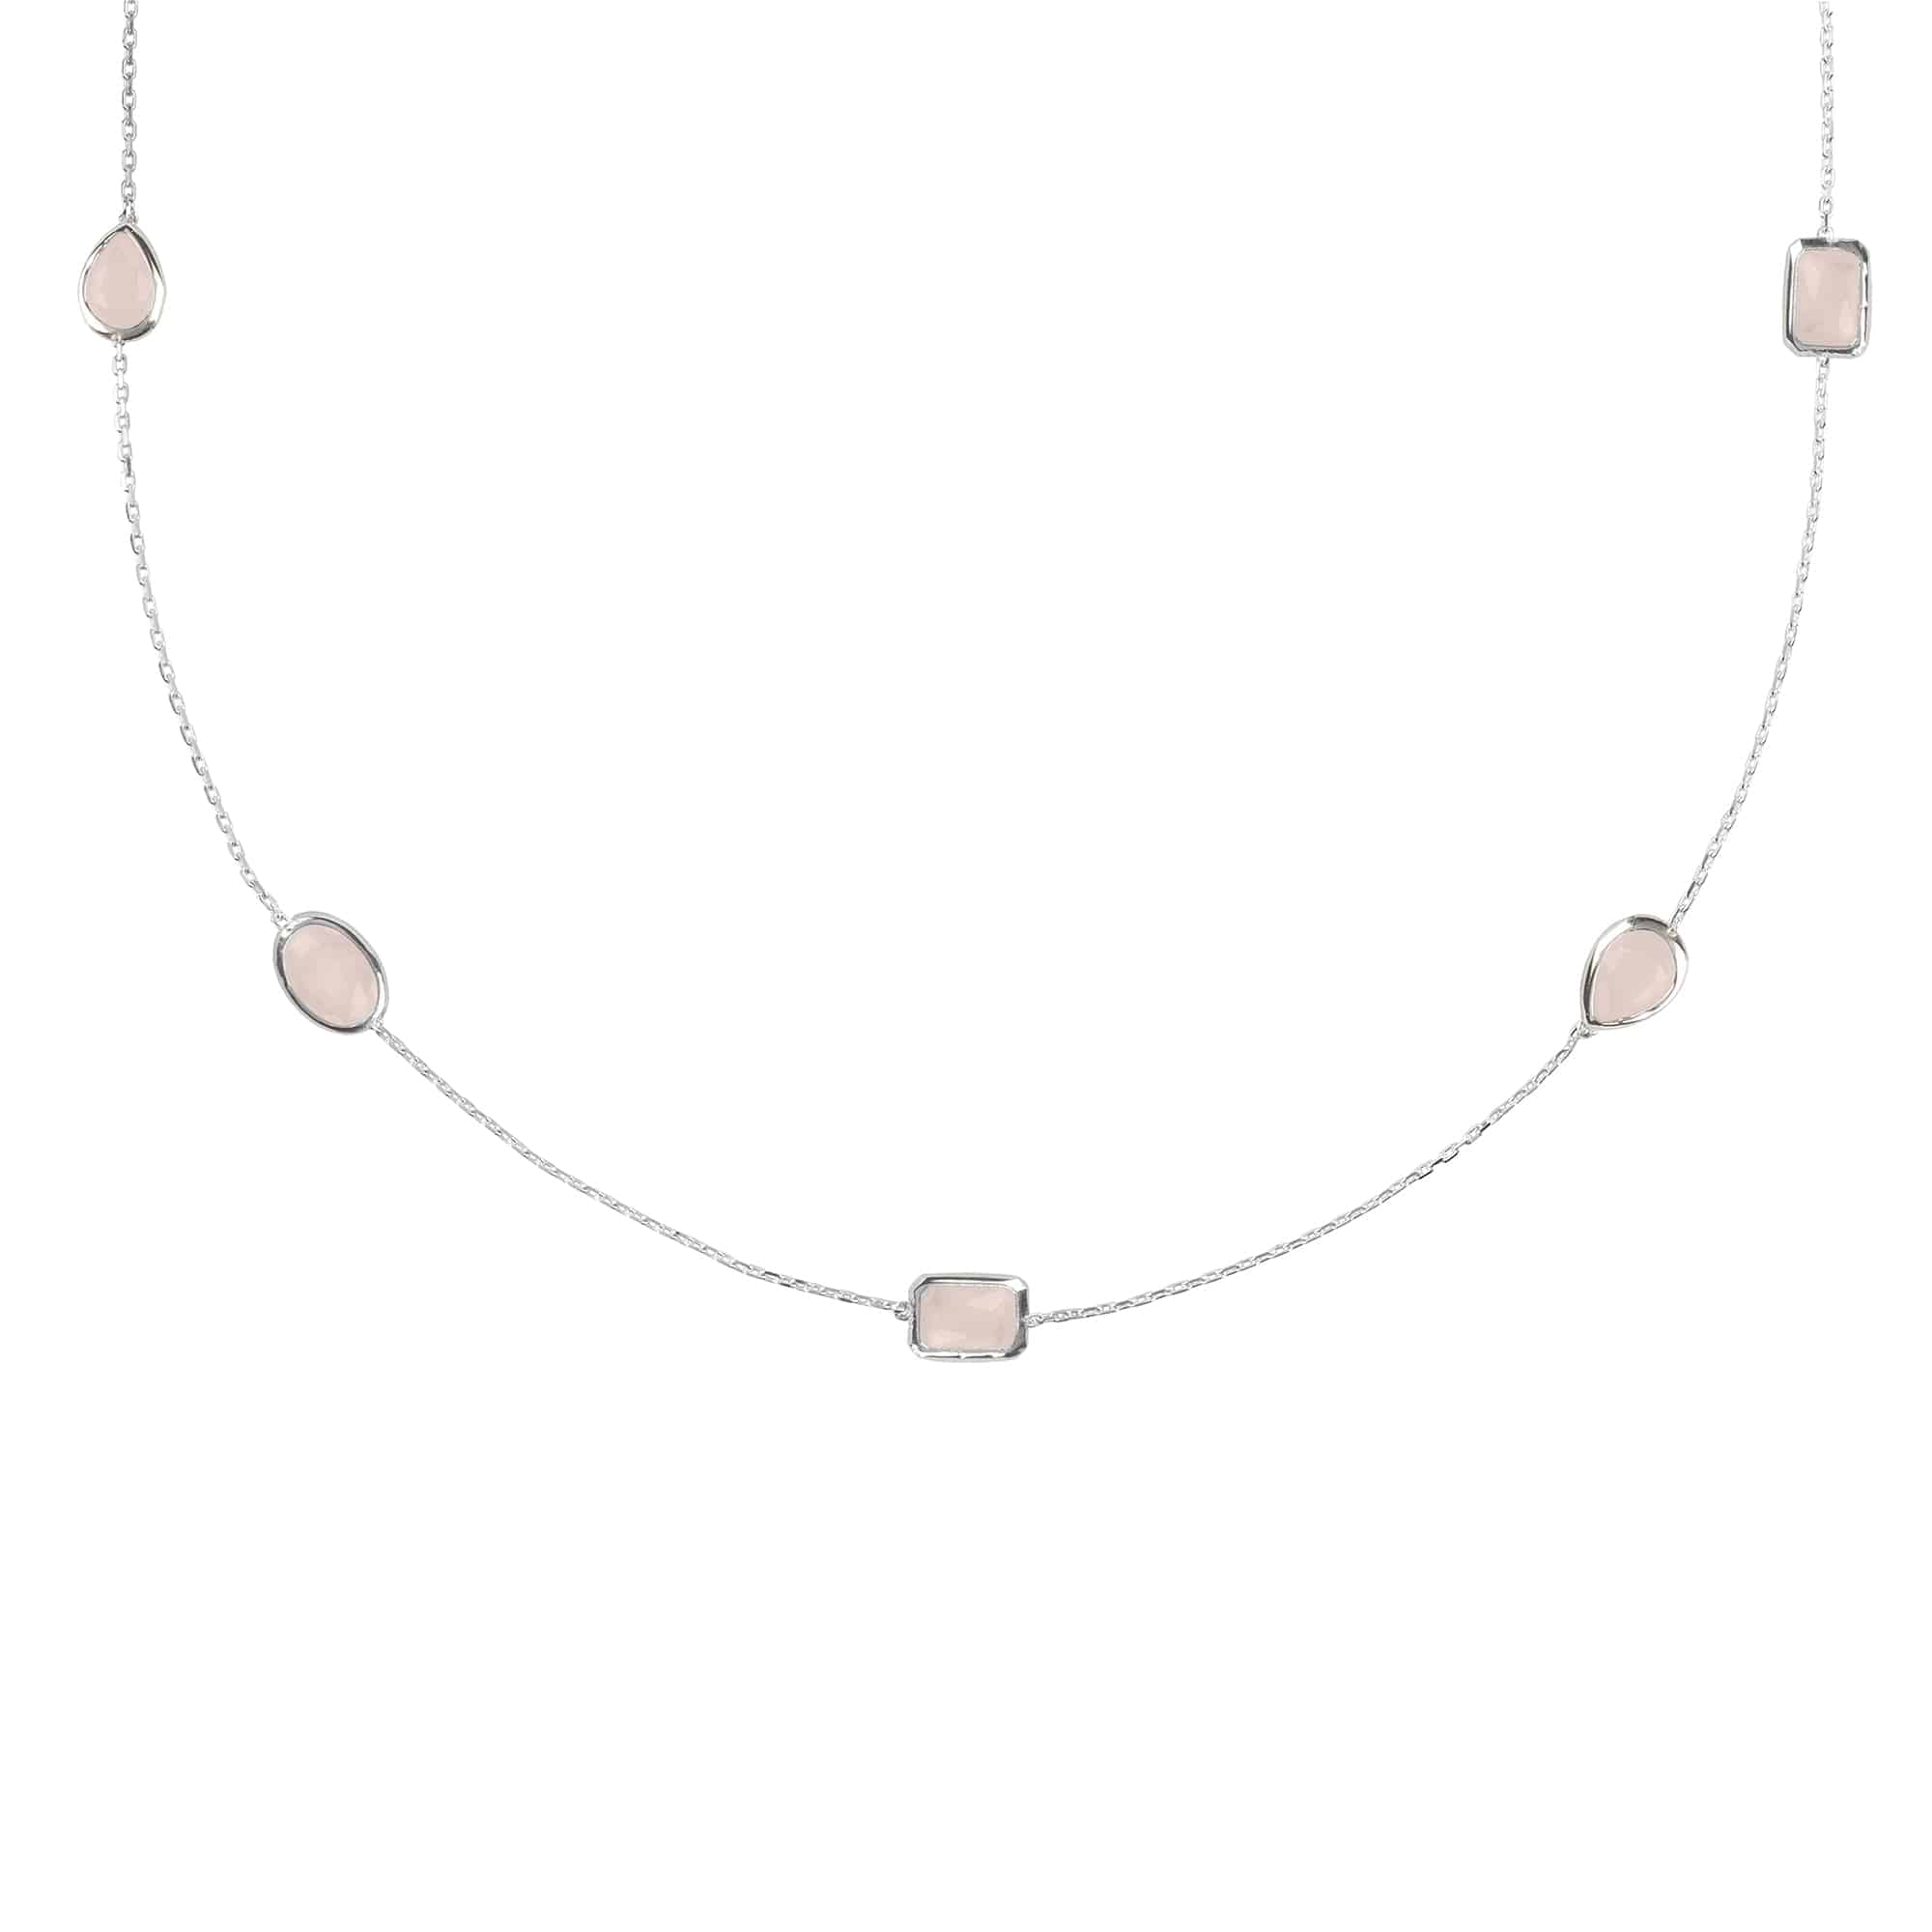 Venice 120Cm Long Chain Necklace Silver Rose Quartz - LATELITA Necklaces